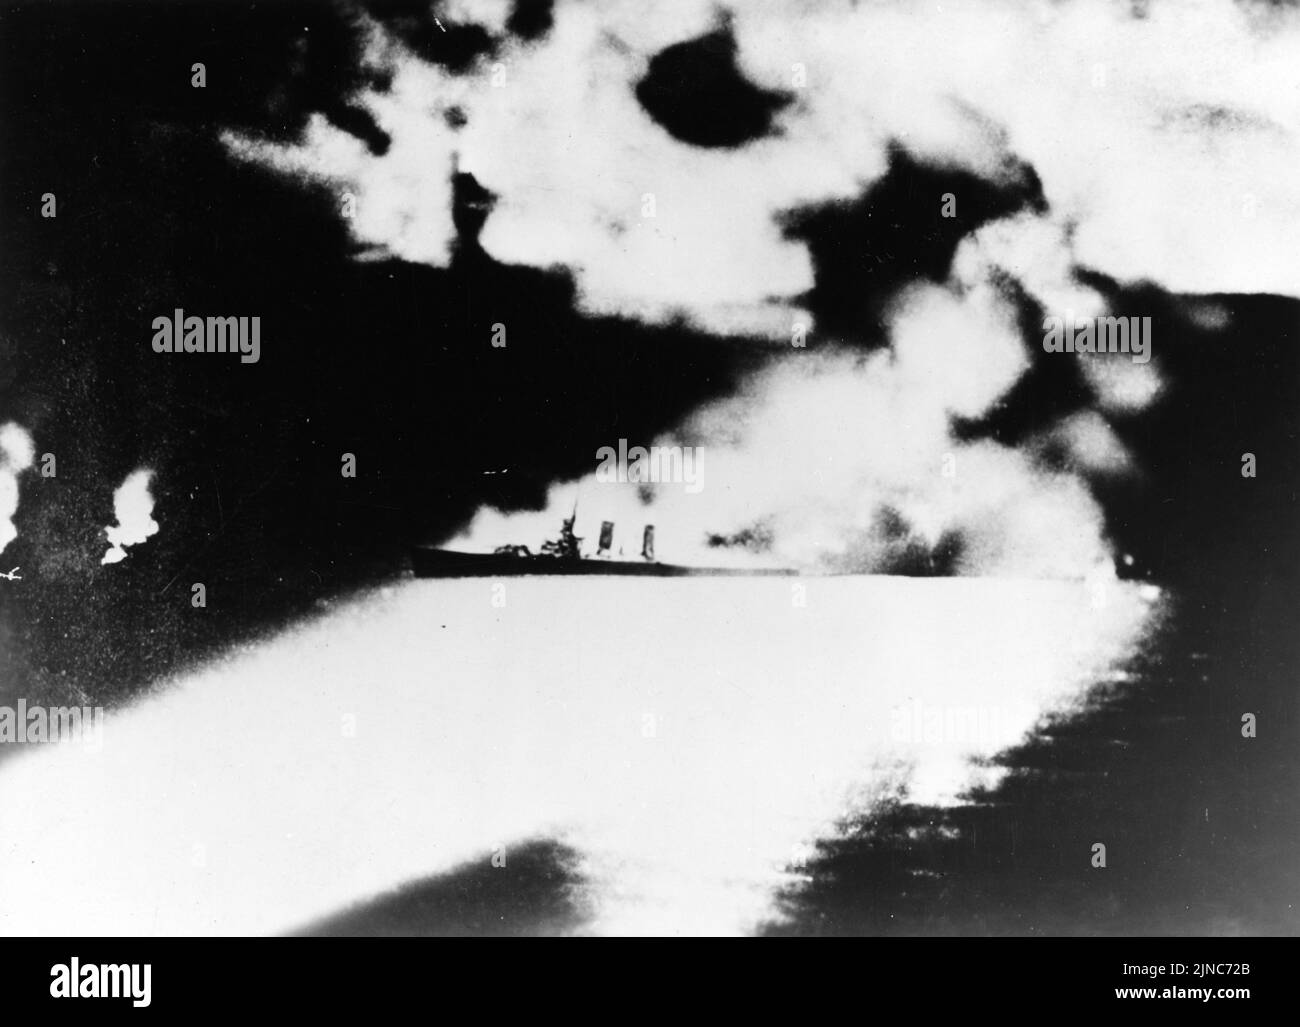 Une photo spectaculaire du croiseur lourd USS Quincy (CA-39) de la Marine américaine photographié par un croiseur japonais pendant la bataille de l'île de Savo, au large de Guadalcanal, le 9 août 1942. Quincy, vu ici en feu et illuminé par des projecteurs japonais, a été coulé dans cette action. Banque D'Images